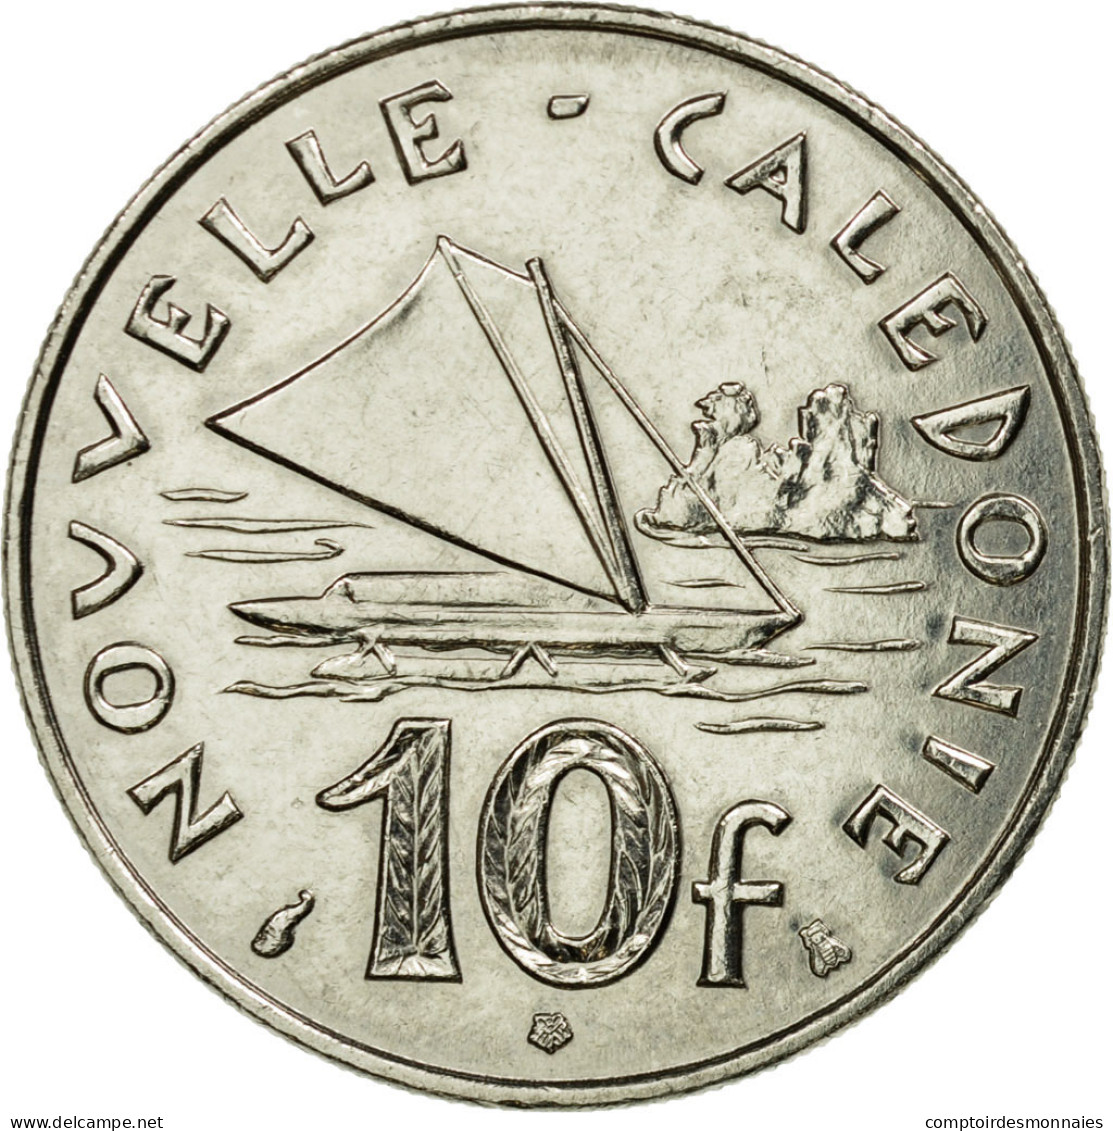 Monnaie, Nouvelle-Calédonie, 10 Francs, 1995, Paris, SUP, Nickel, KM:11 - Nieuw-Caledonië